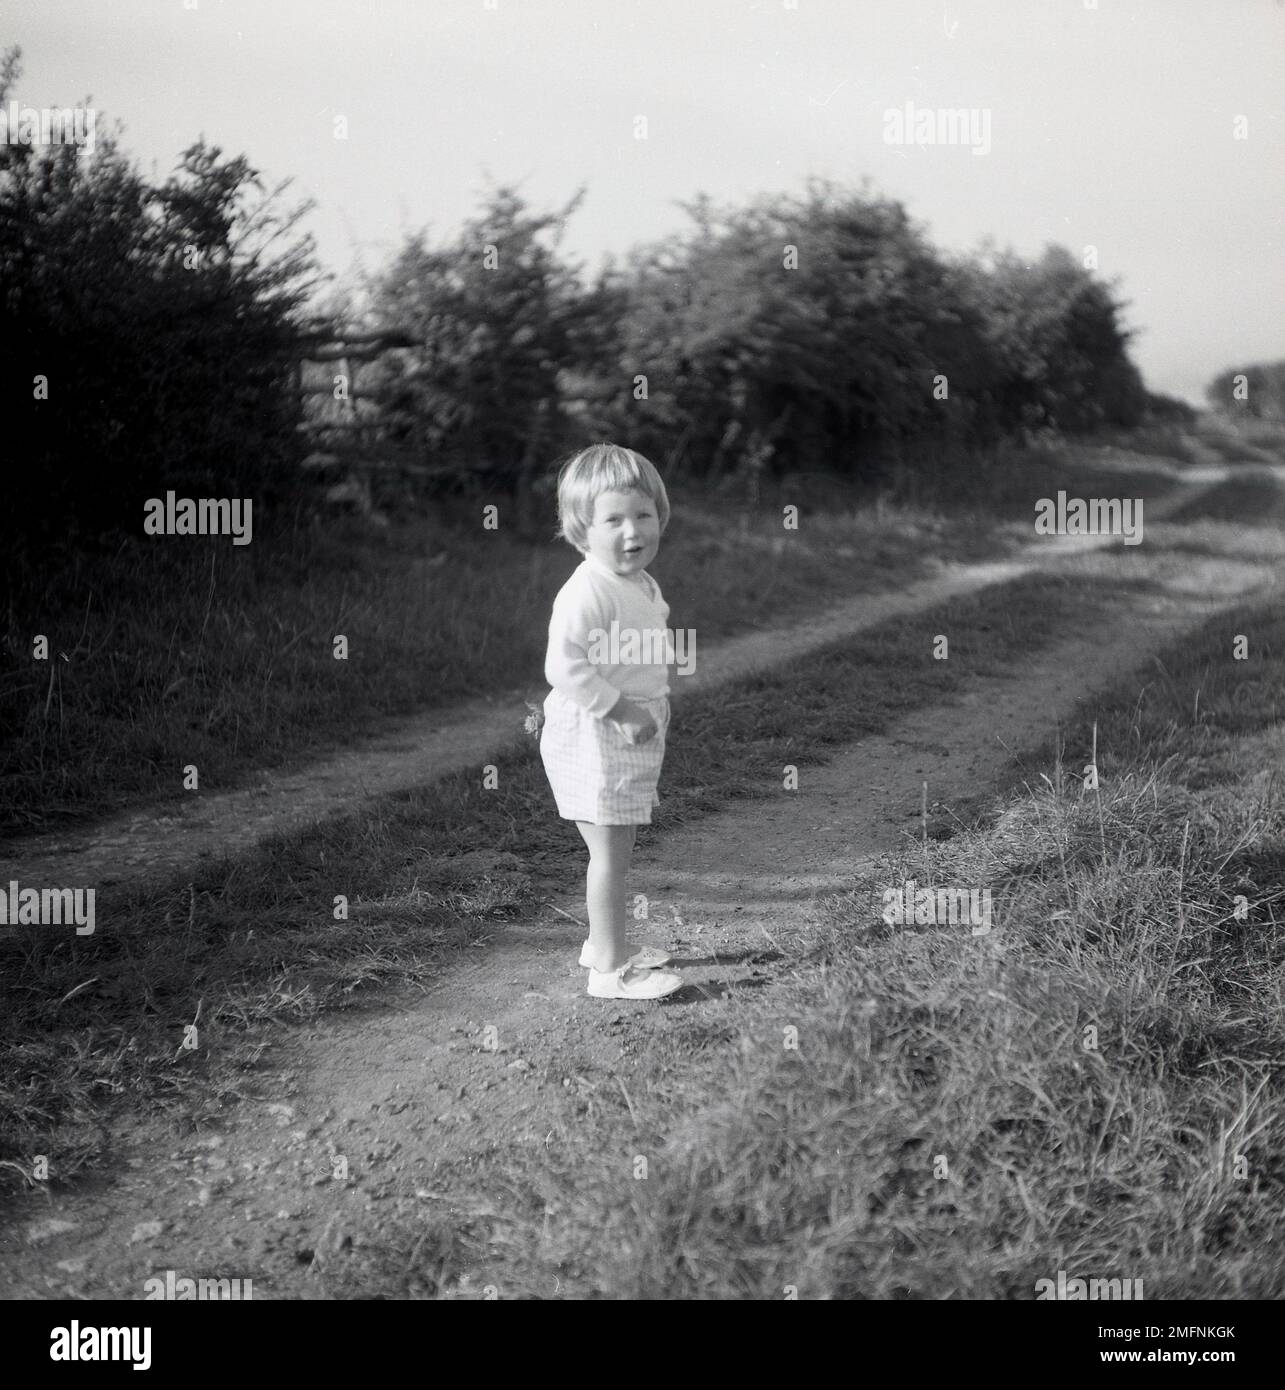 1950s, storica, fuori in campagna, una dolce bambina in piedi su una pista agricola, girando la testa, forse controllando dove sono i suoi genitori, Inghilterra, Regno Unito. Foto Stock